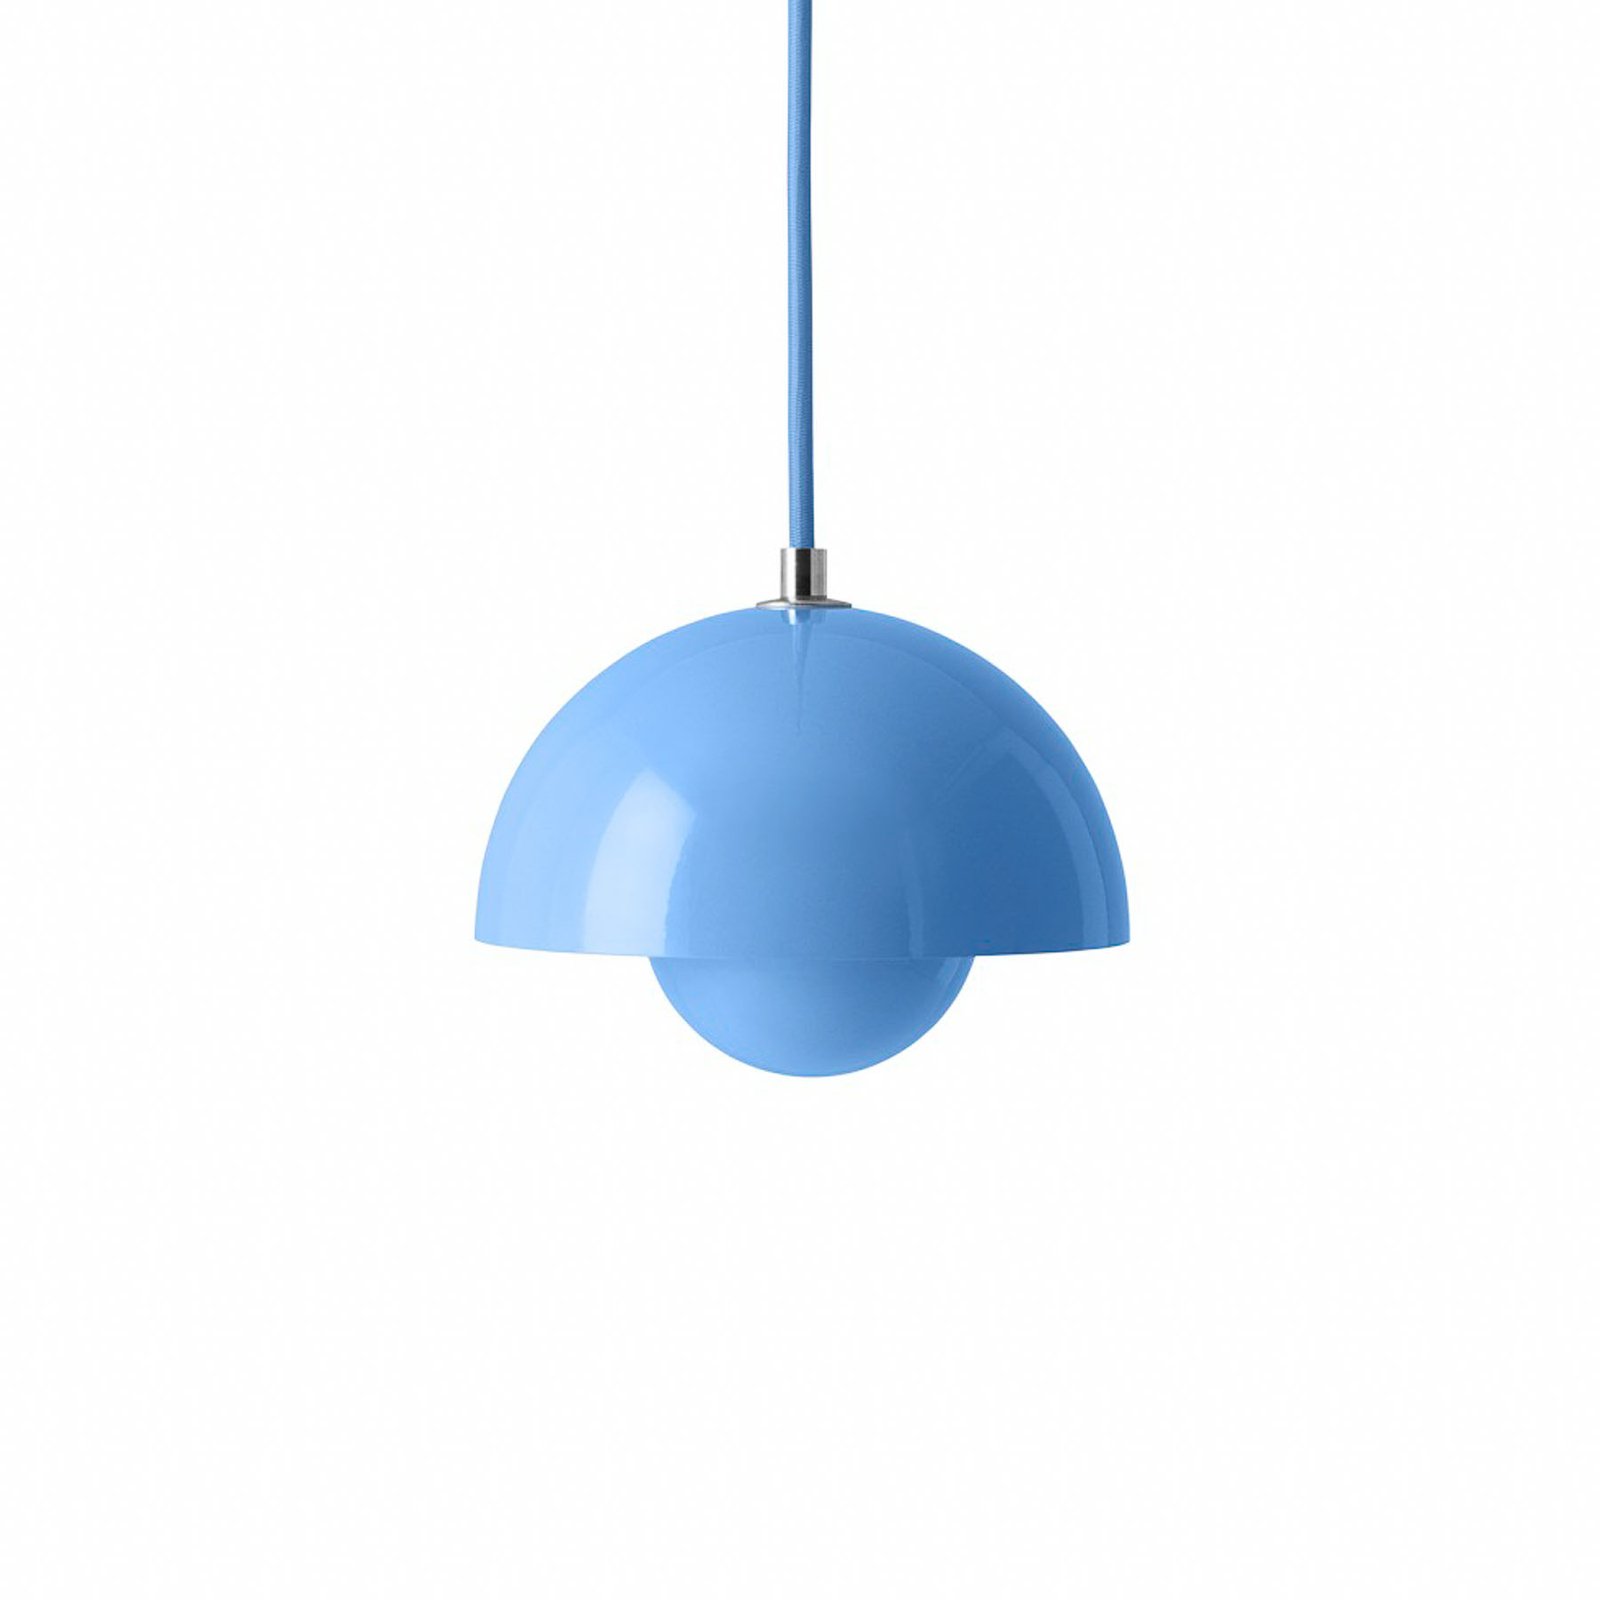 &Tradition hanglamp Flowerpot VP10, Ø 16 cm, lichtblauw